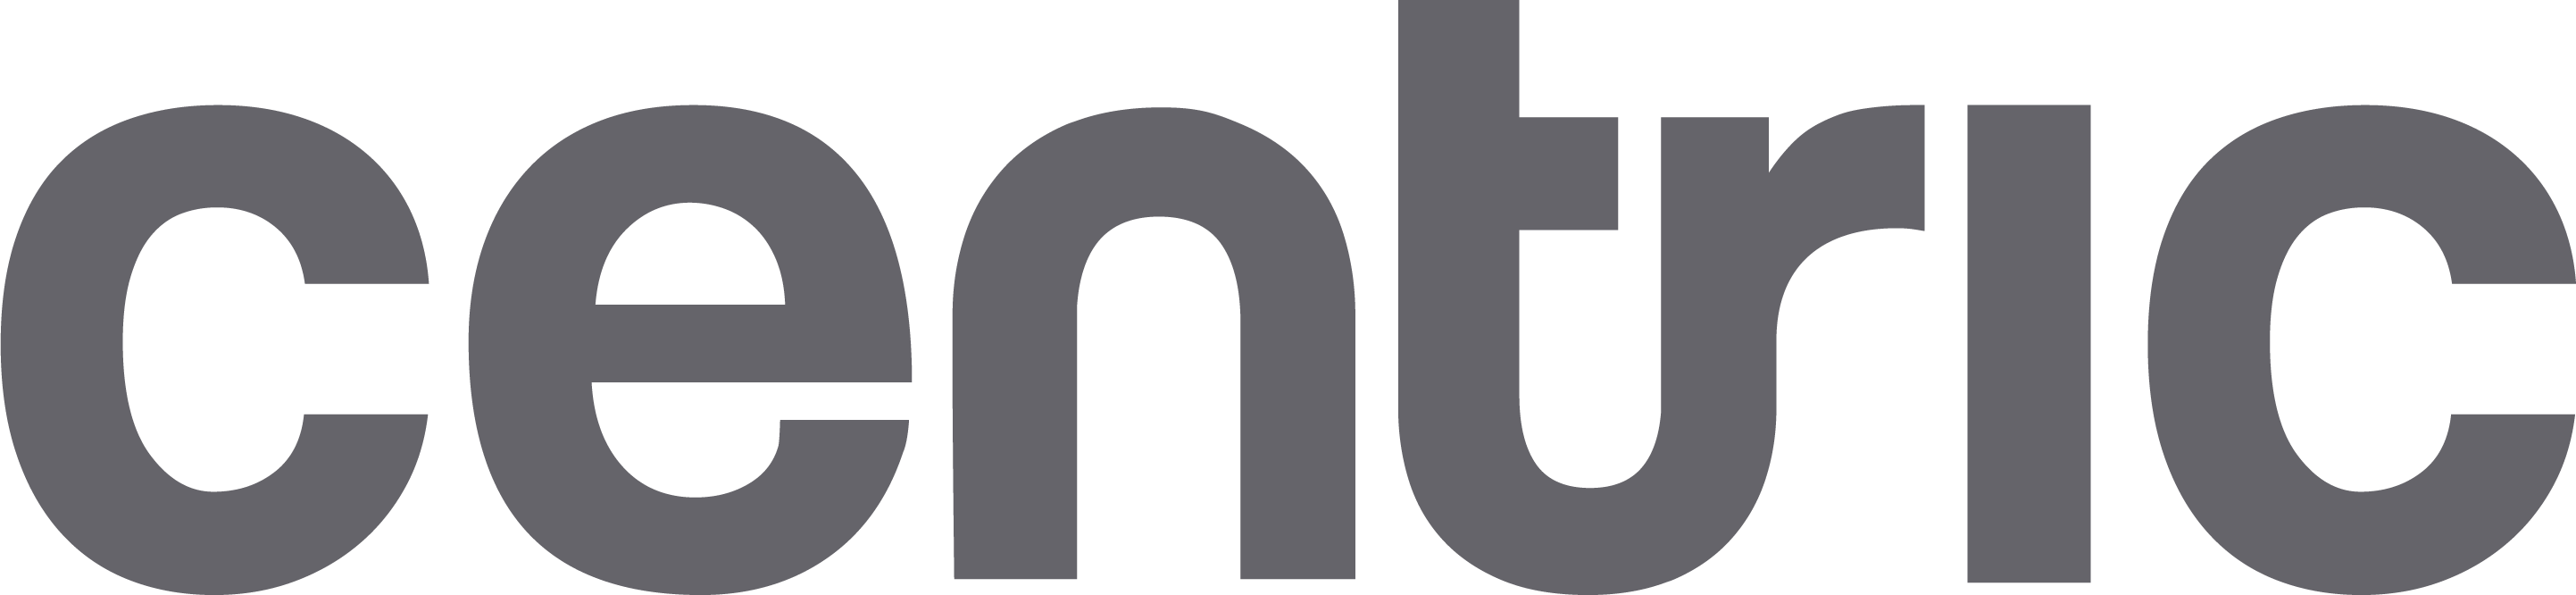 Логотип Centric